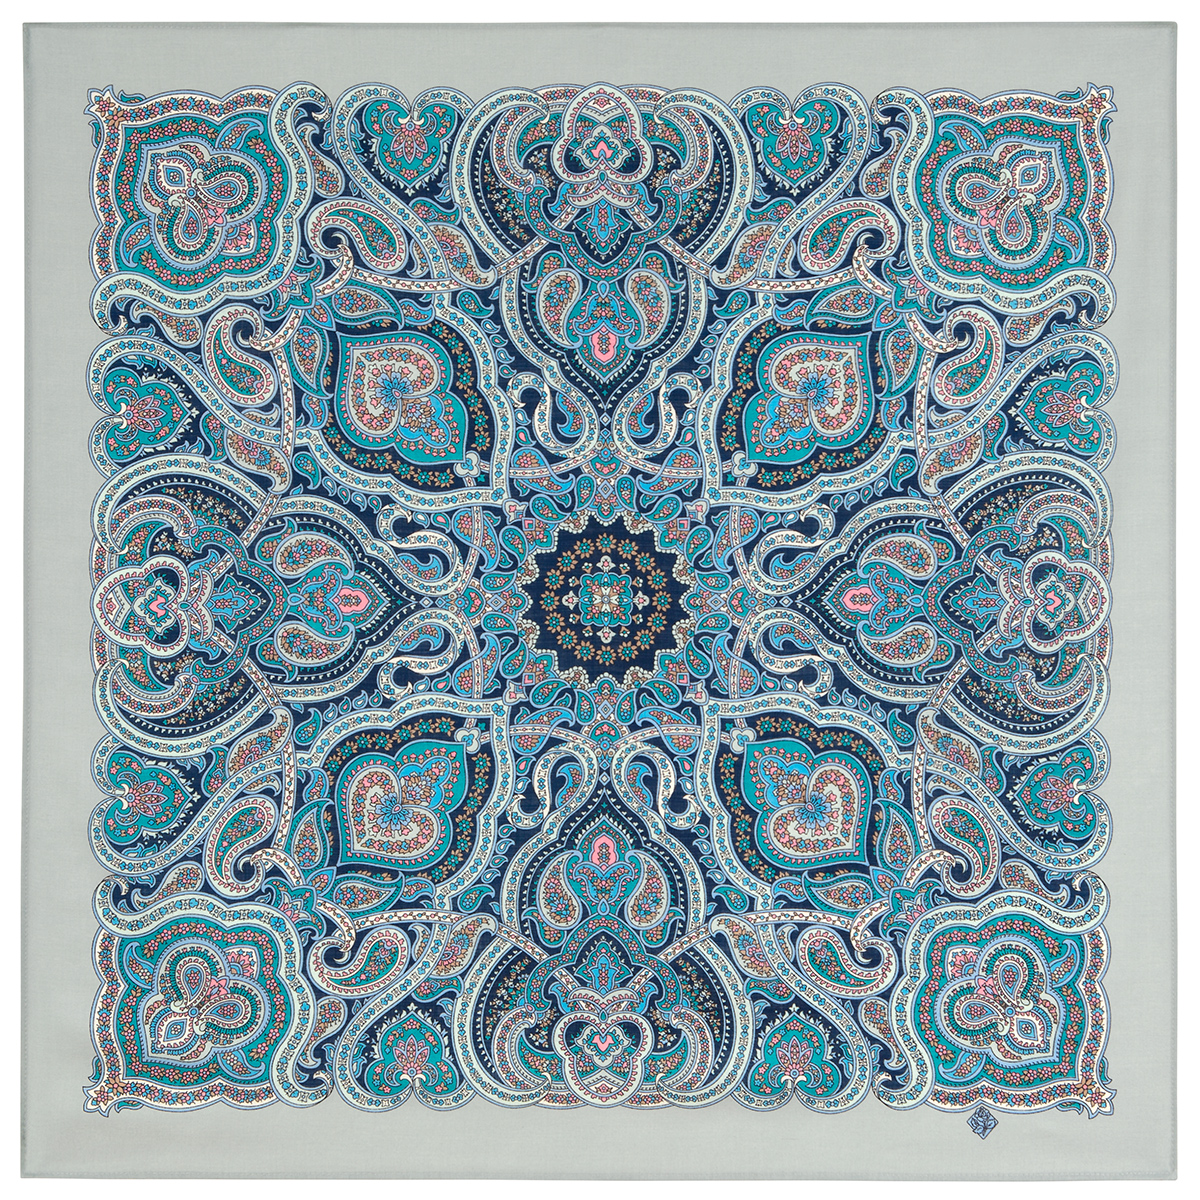 Платок женский Павловопосадский платок 1949 серо-голубой/синий/розовый/бирюзовый, 89х89 см